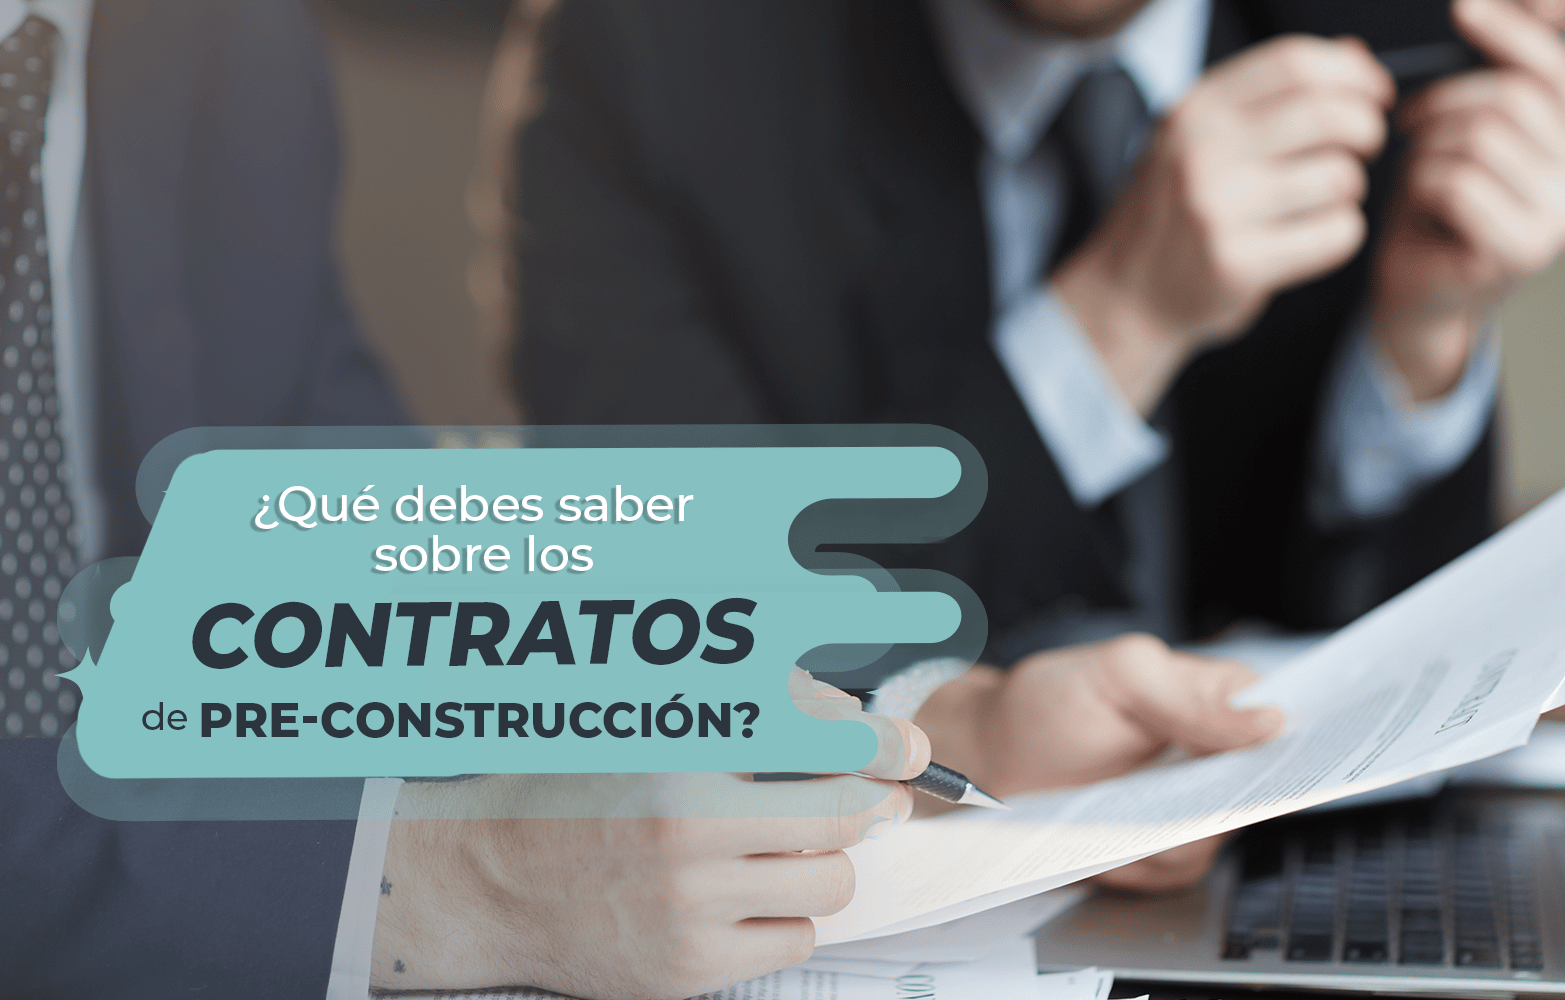 ¿Qué debes saber sobre los contratos de pre-construcción?